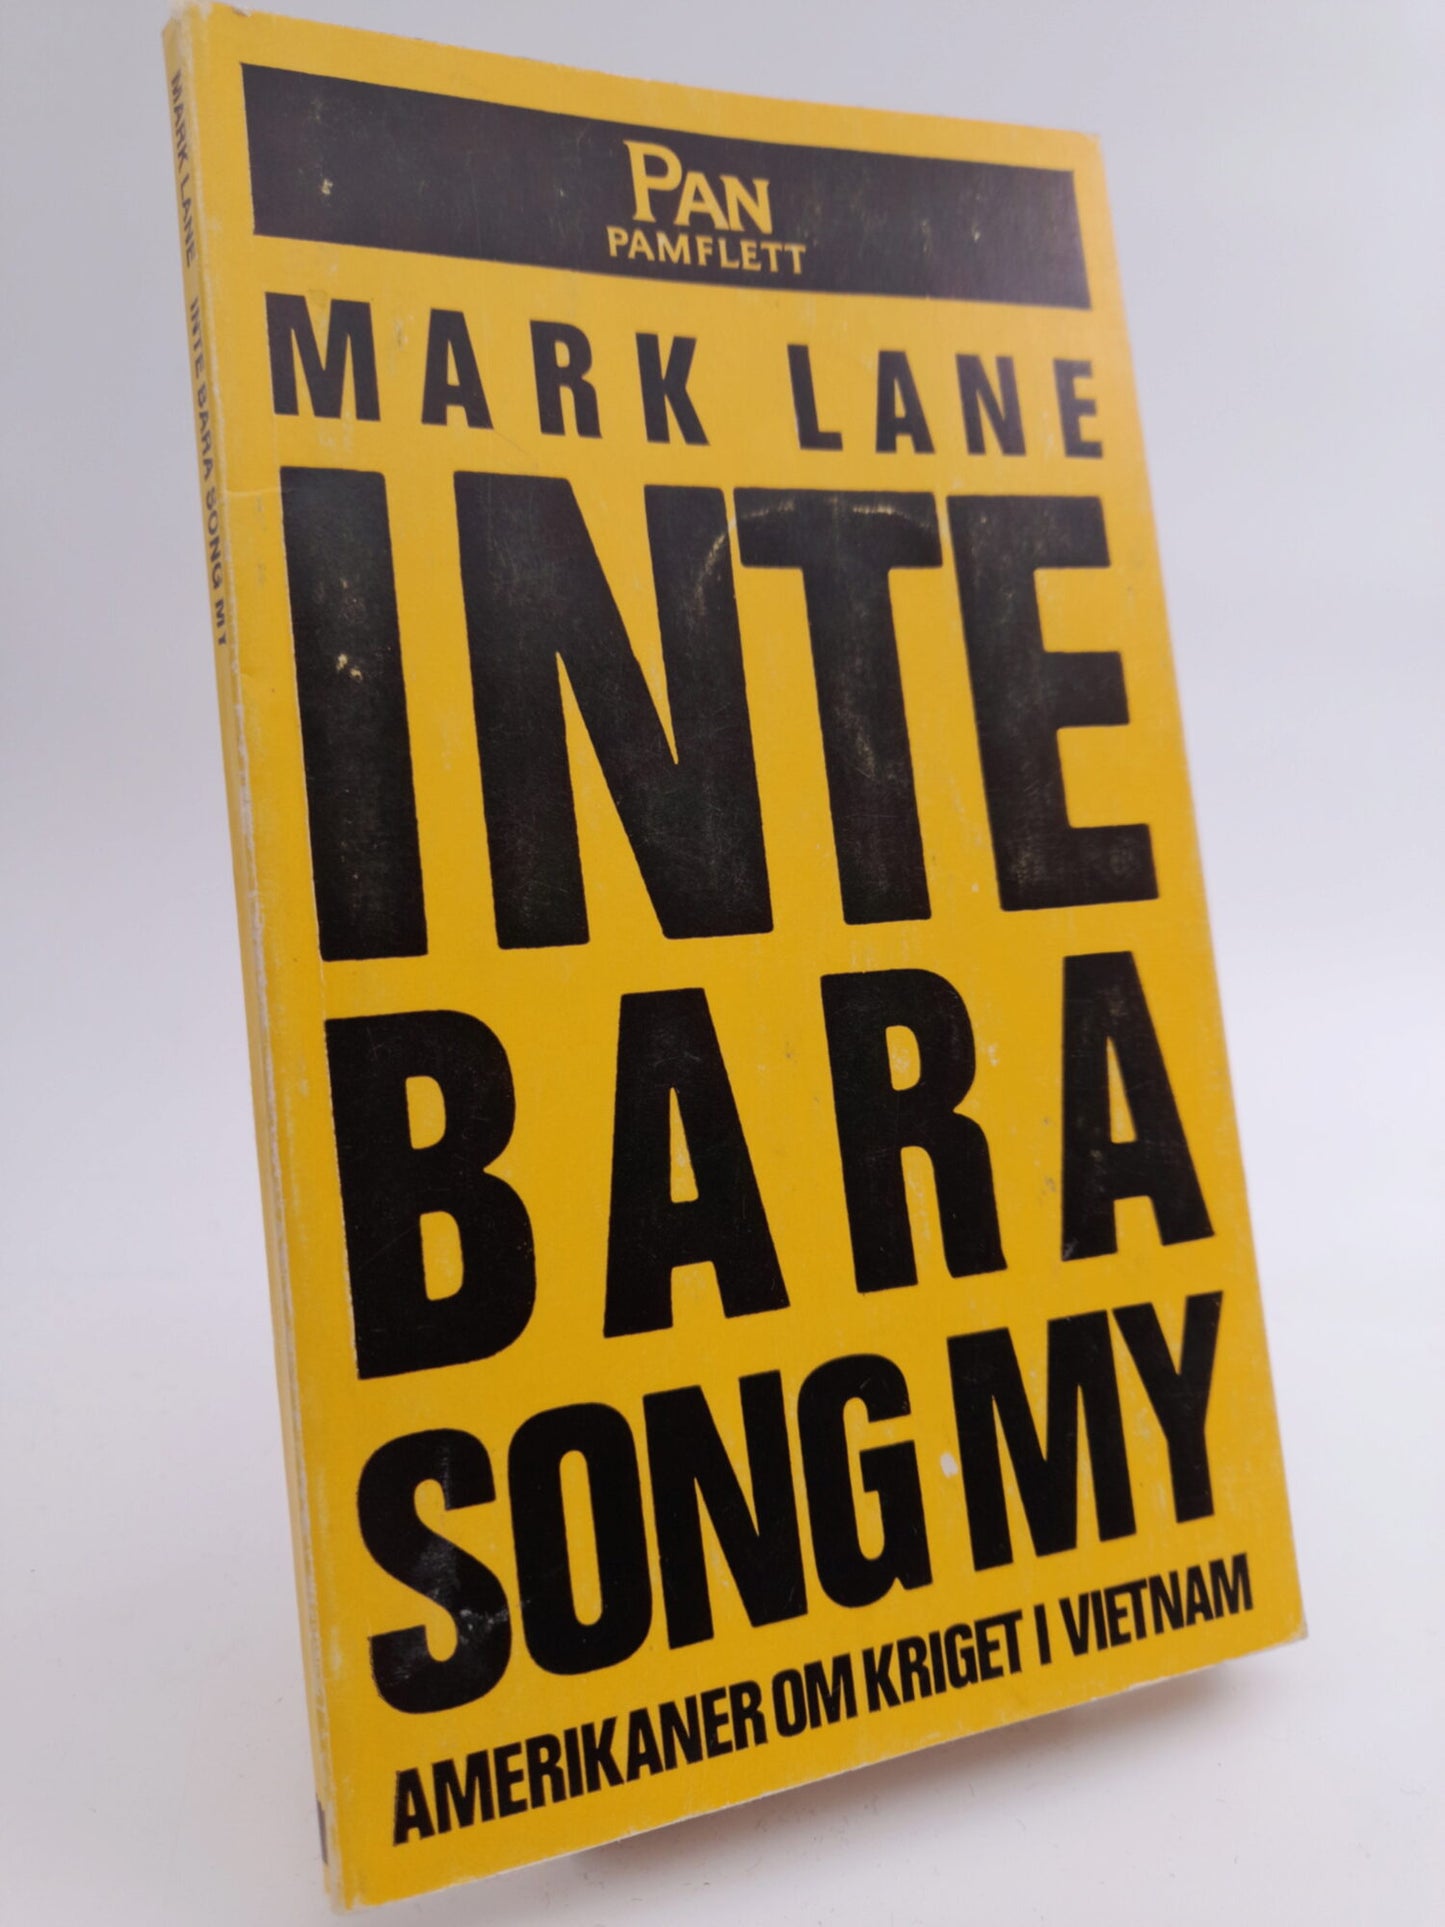 Lane, Mark | Inte bara Song My : Amerikaner om kriget i Vietnam